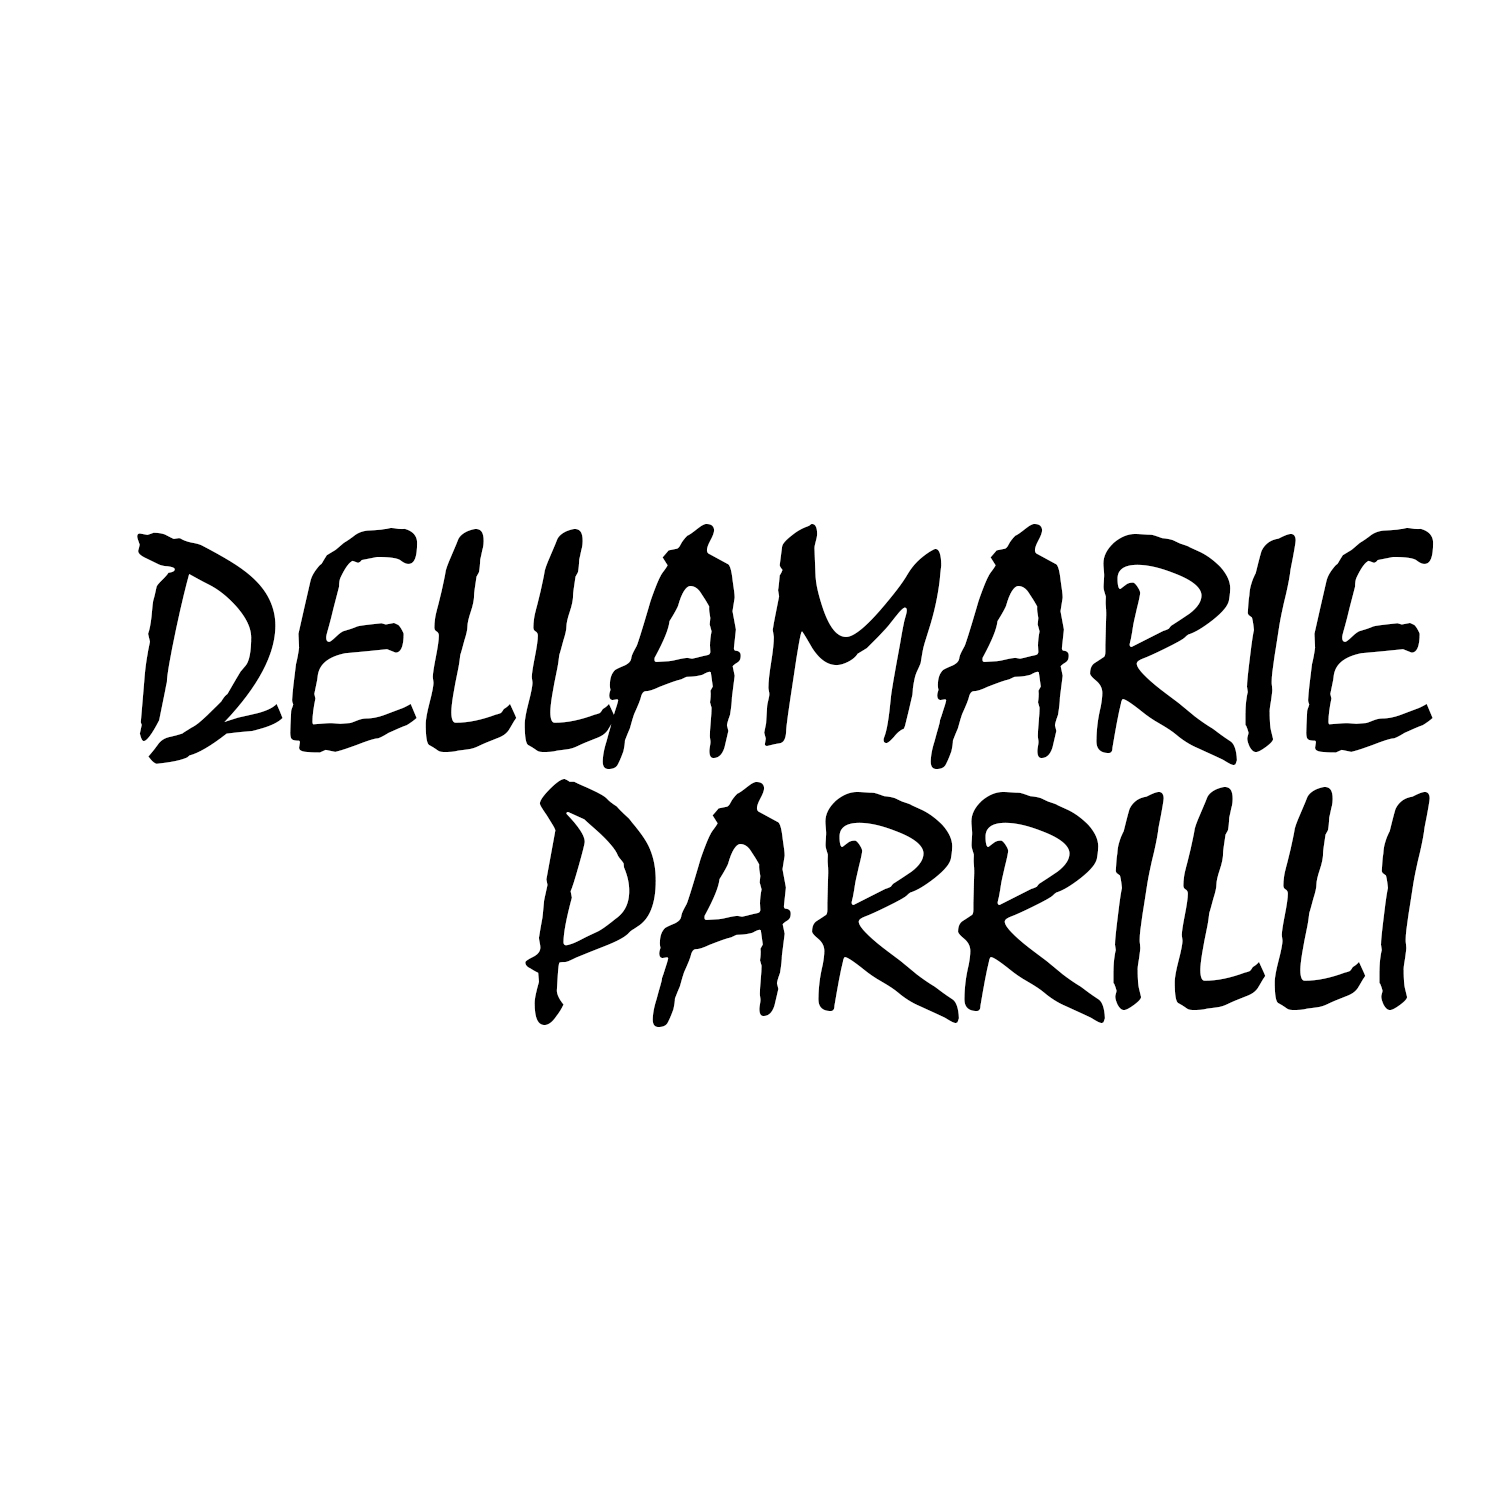 Dellamarie Parrilli